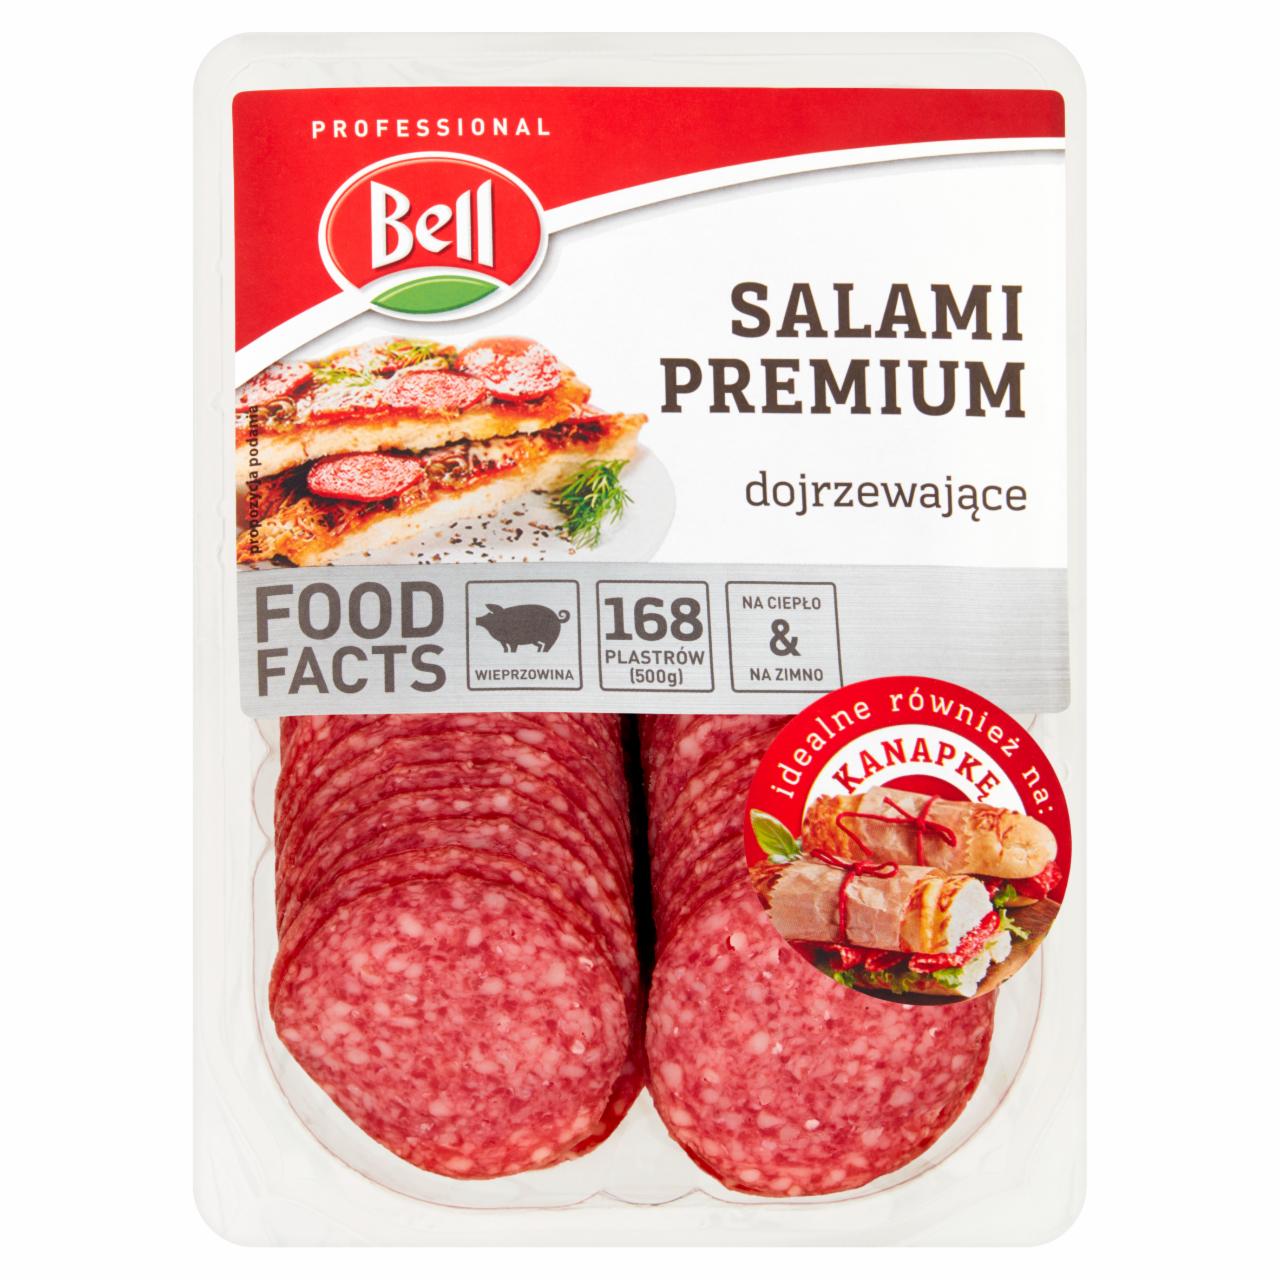 Zdjęcia - Bell Salami Premium dojrzewające 500 g